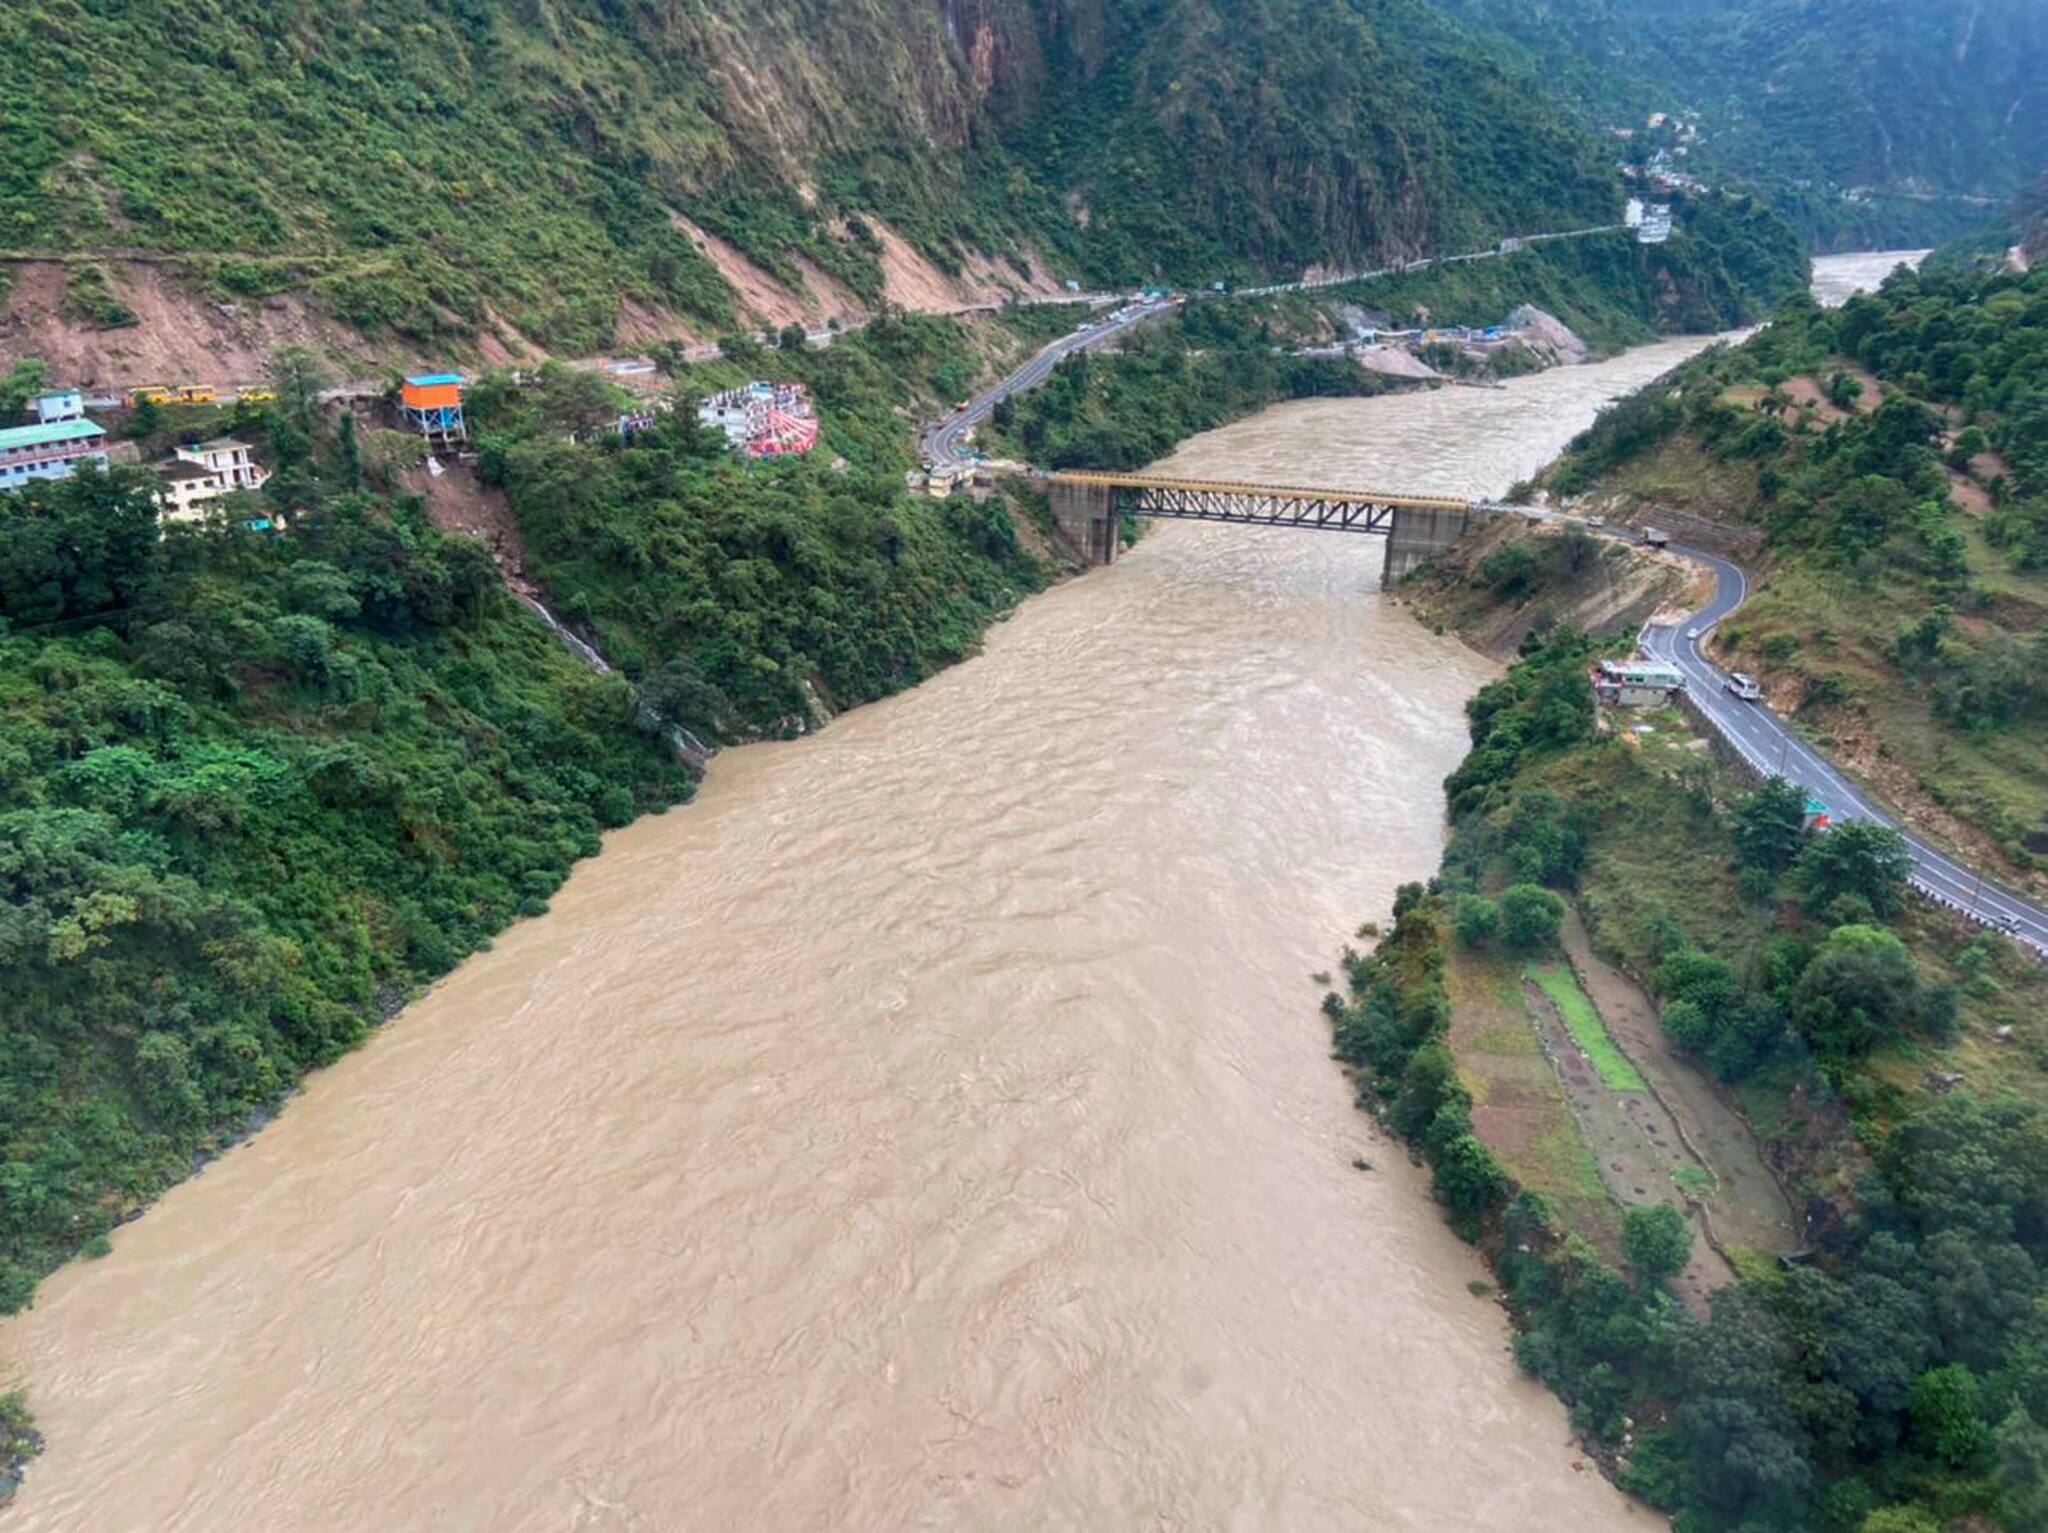 Dehradun: A view of a swollen river after heavy rain.